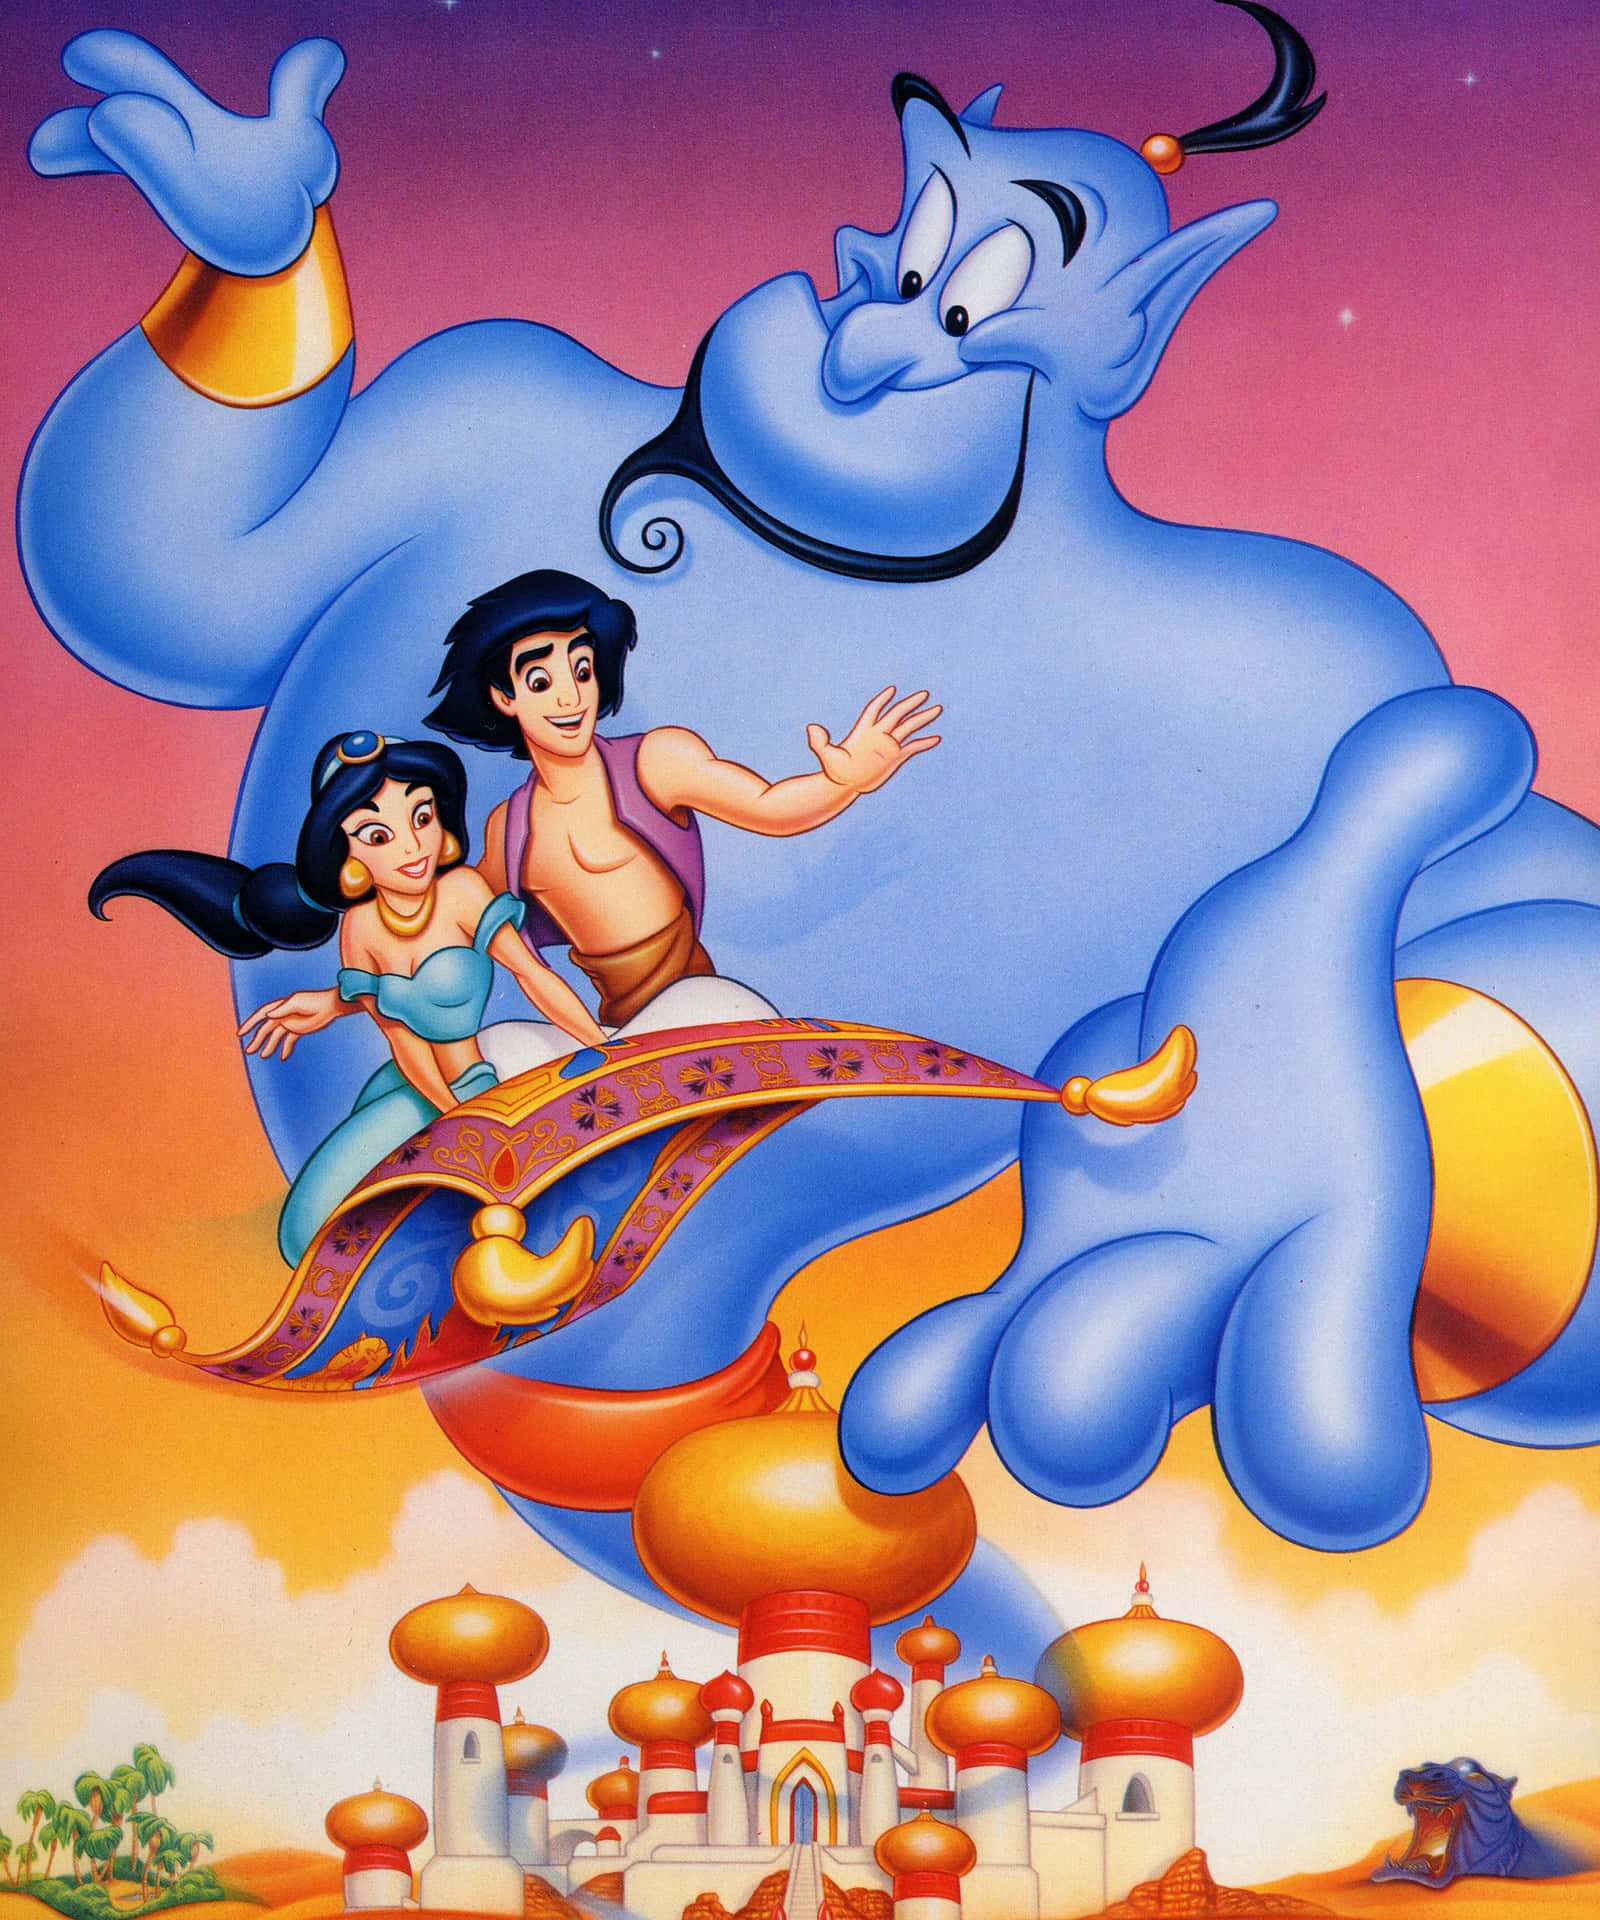 Imagemem Cartoon Do Aladdin.